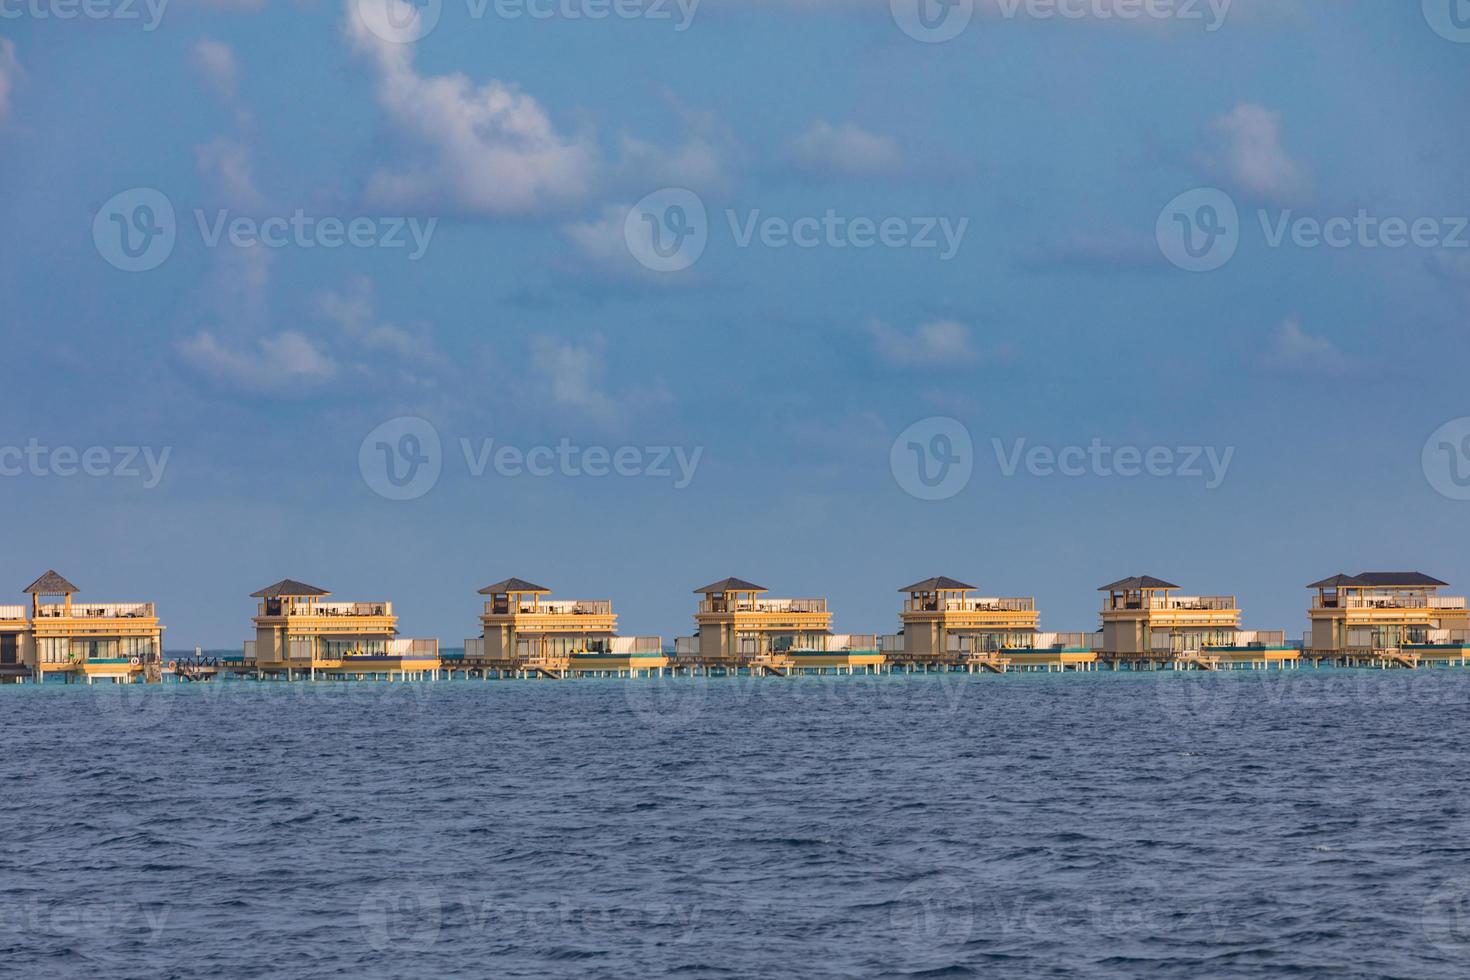 complejo de villas de agua. isla de maldivas, océano índico. vista desde el barco, bungalows exóticos de lujo sobre el agua. concepto de viajes y turismo de verano, elementos de arquitectura en el agua foto